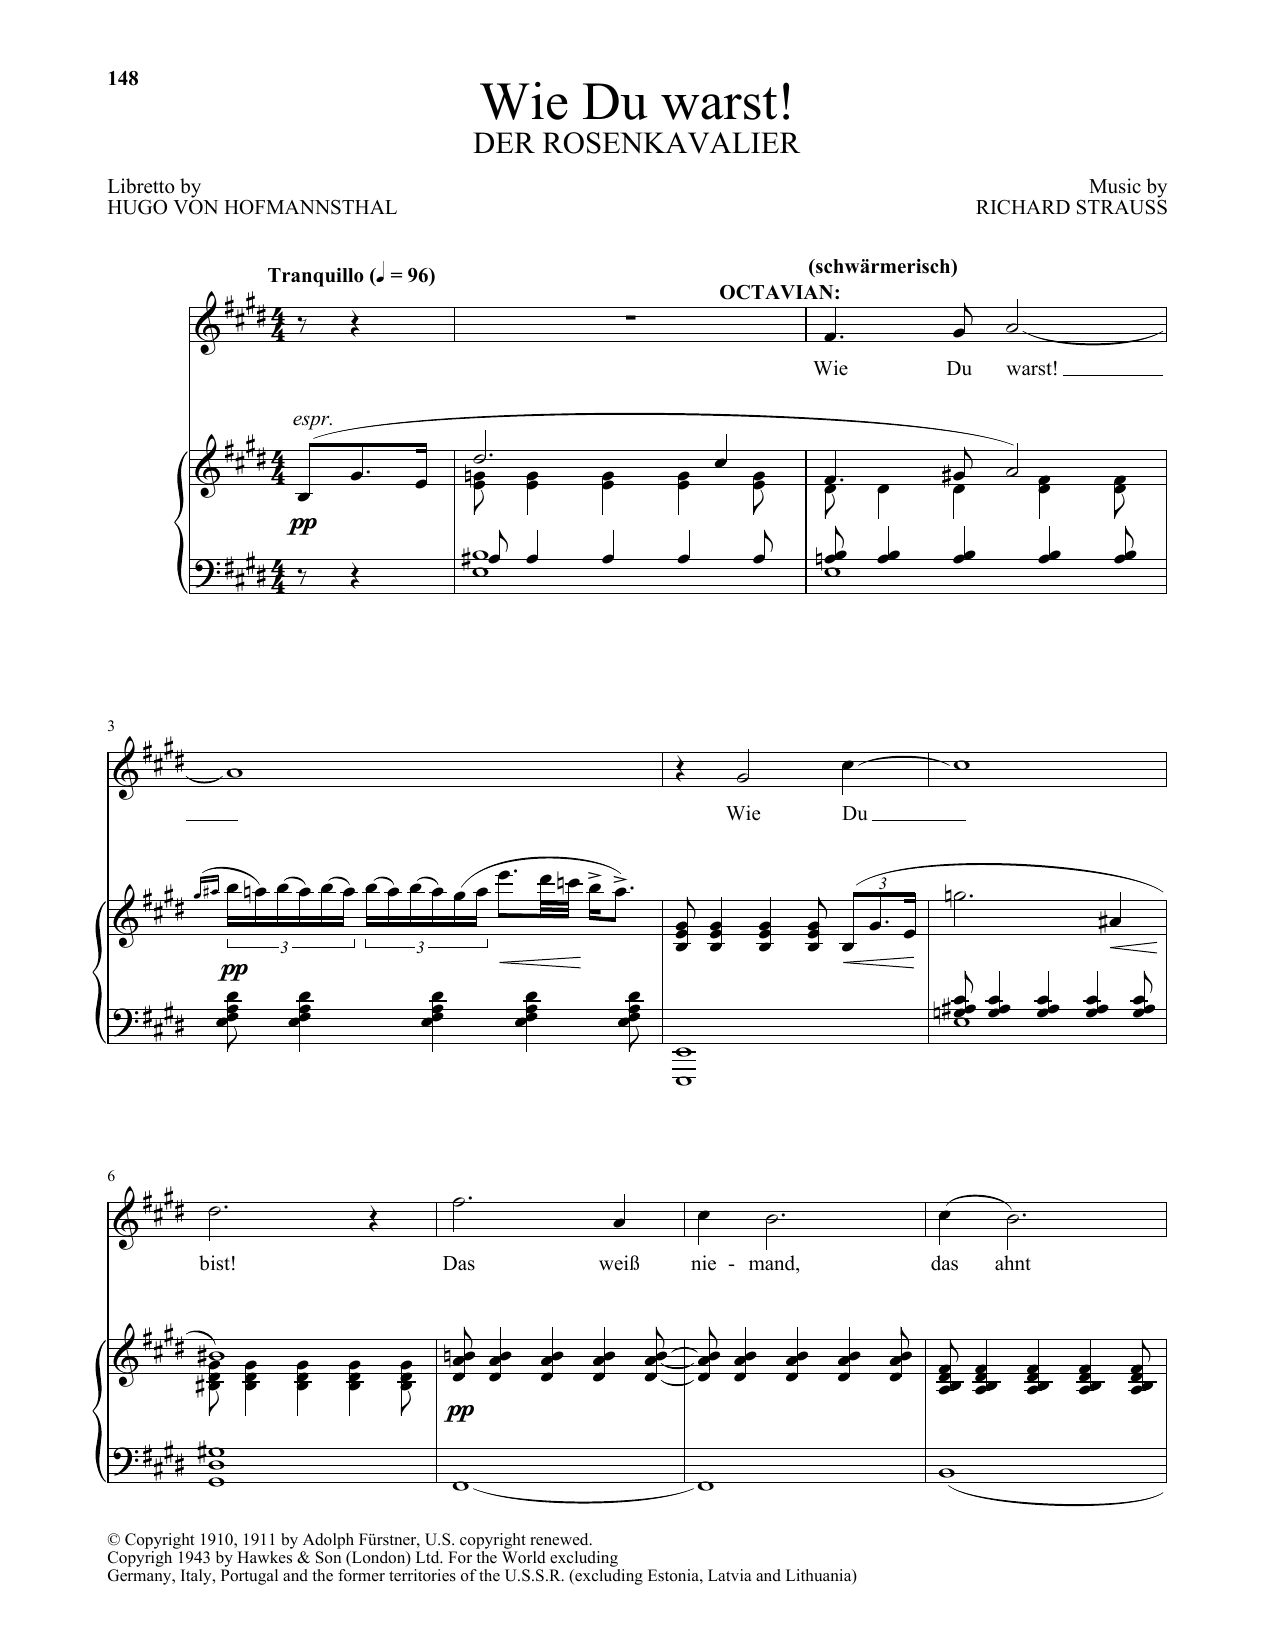 Download Richard Strauss Wie Du warst! (from Der Rosenkavalier) Sheet Music